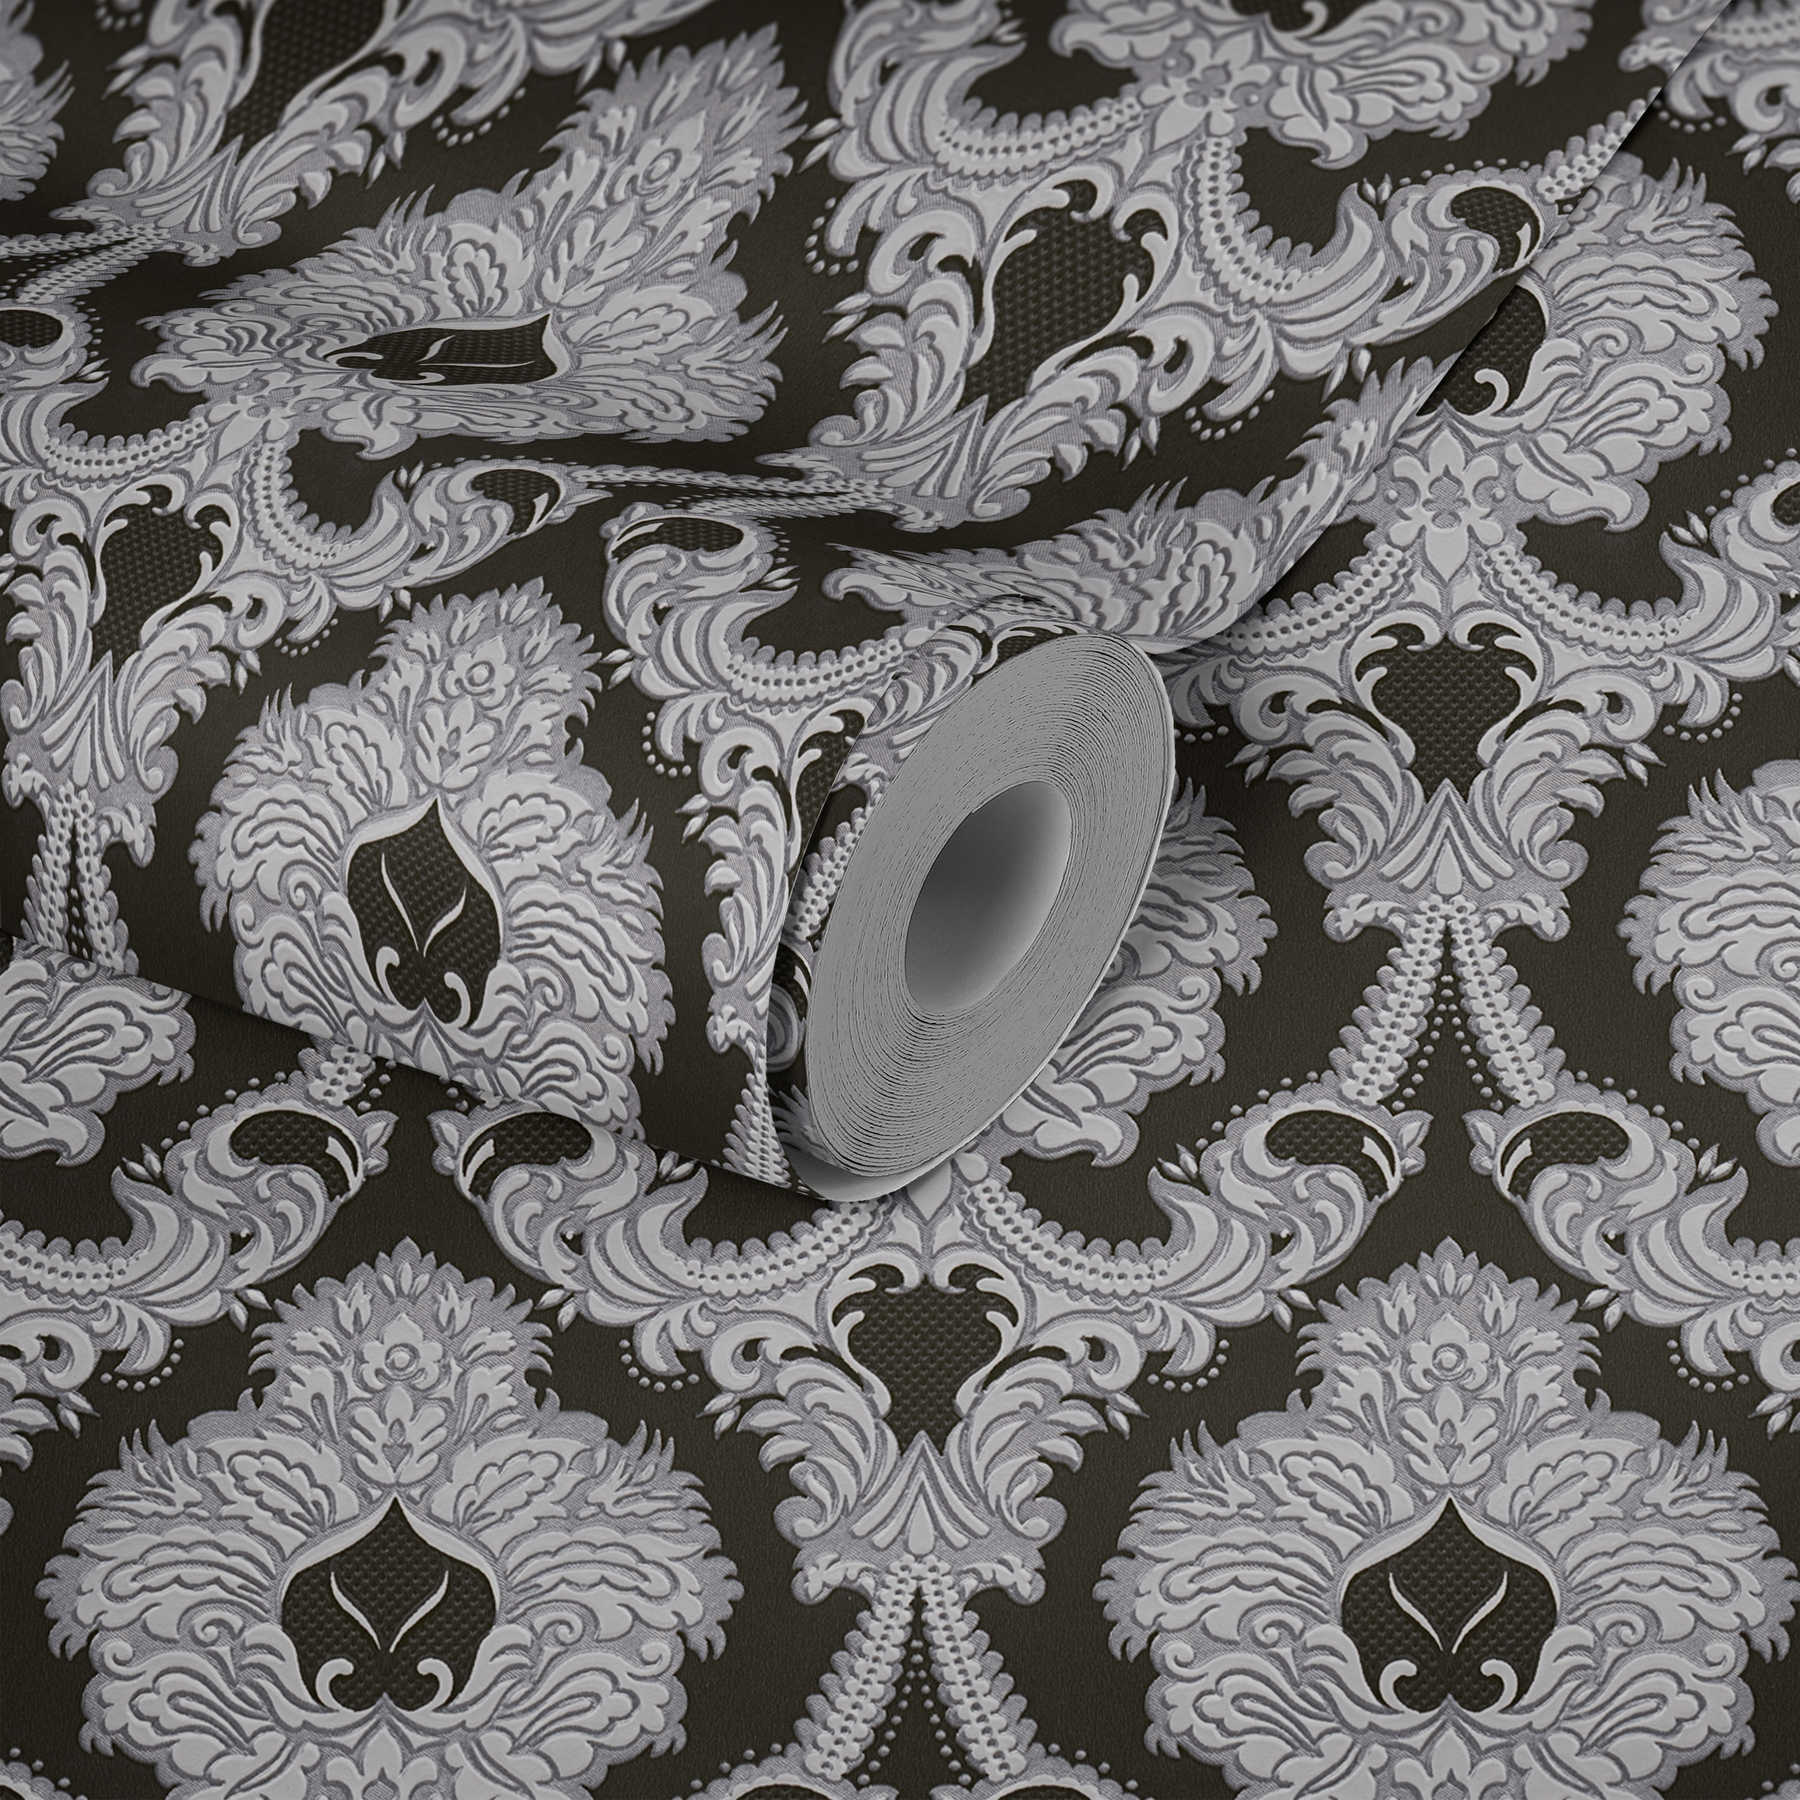             Opulent ornament wallpaper, silver accents - silver, black, white
        